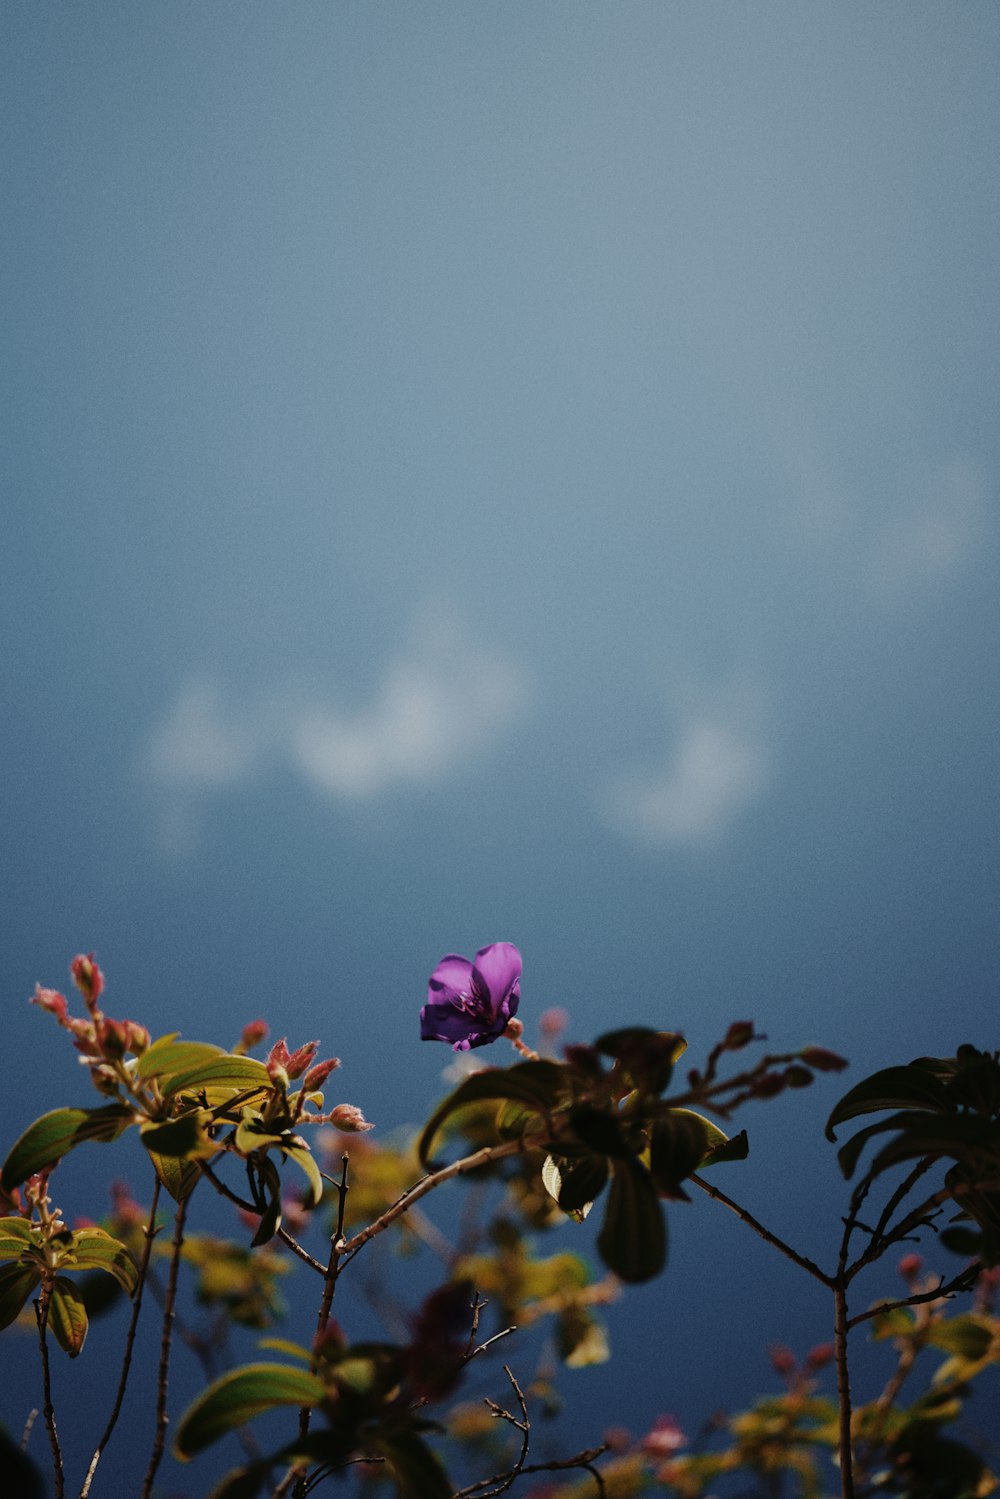 flor cor-de-rosa com folhas verdes sob o céu azul